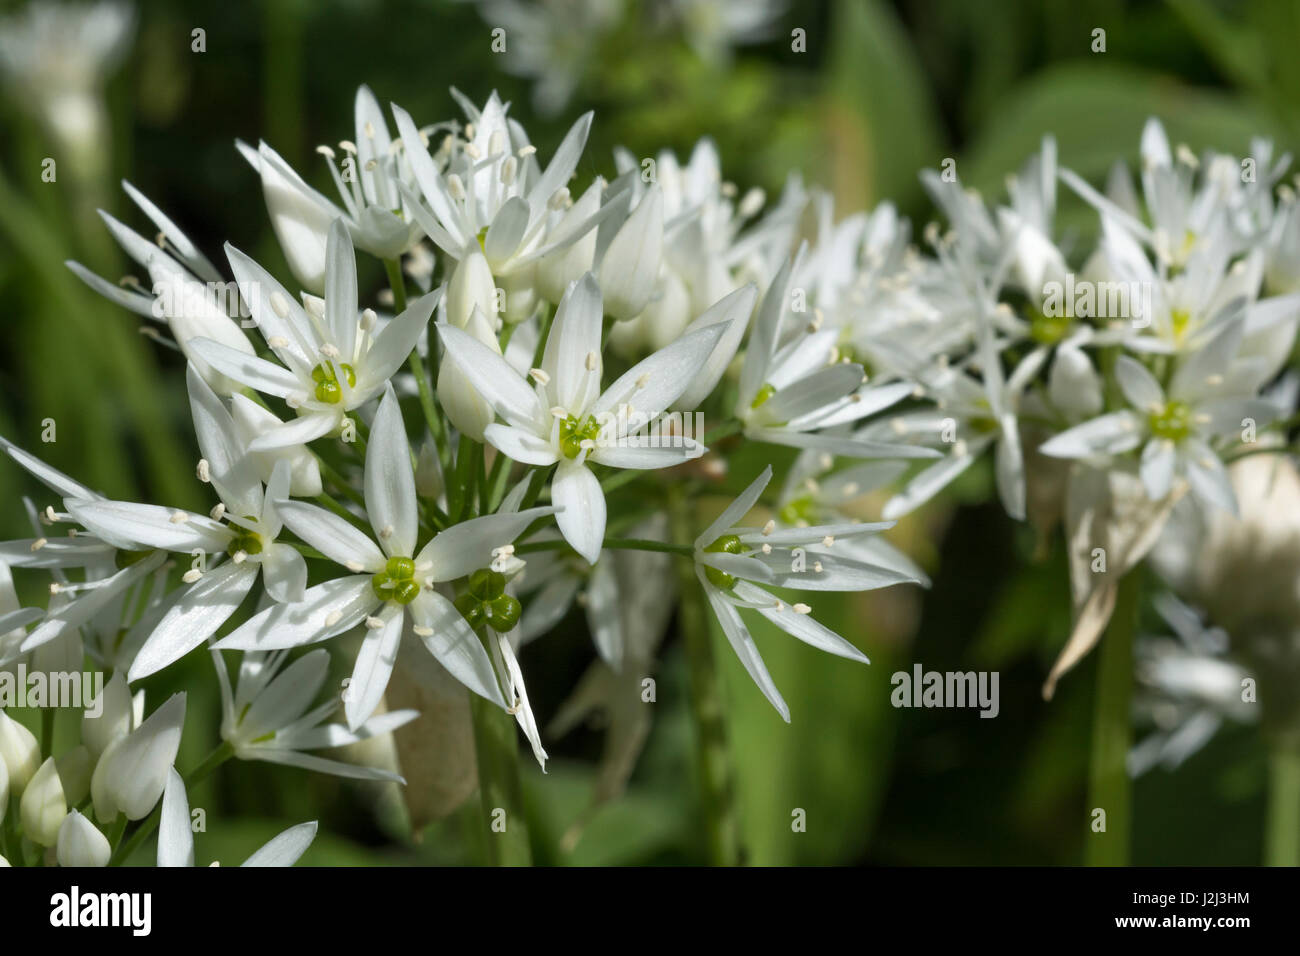 Gros plan de fleurs de l'ail sauvage appelée Ramsons / Allium ursinum. Un subst. de l'ail en cuisine et métaphore de la quête d'aliments sauvages au printemps Banque D'Images